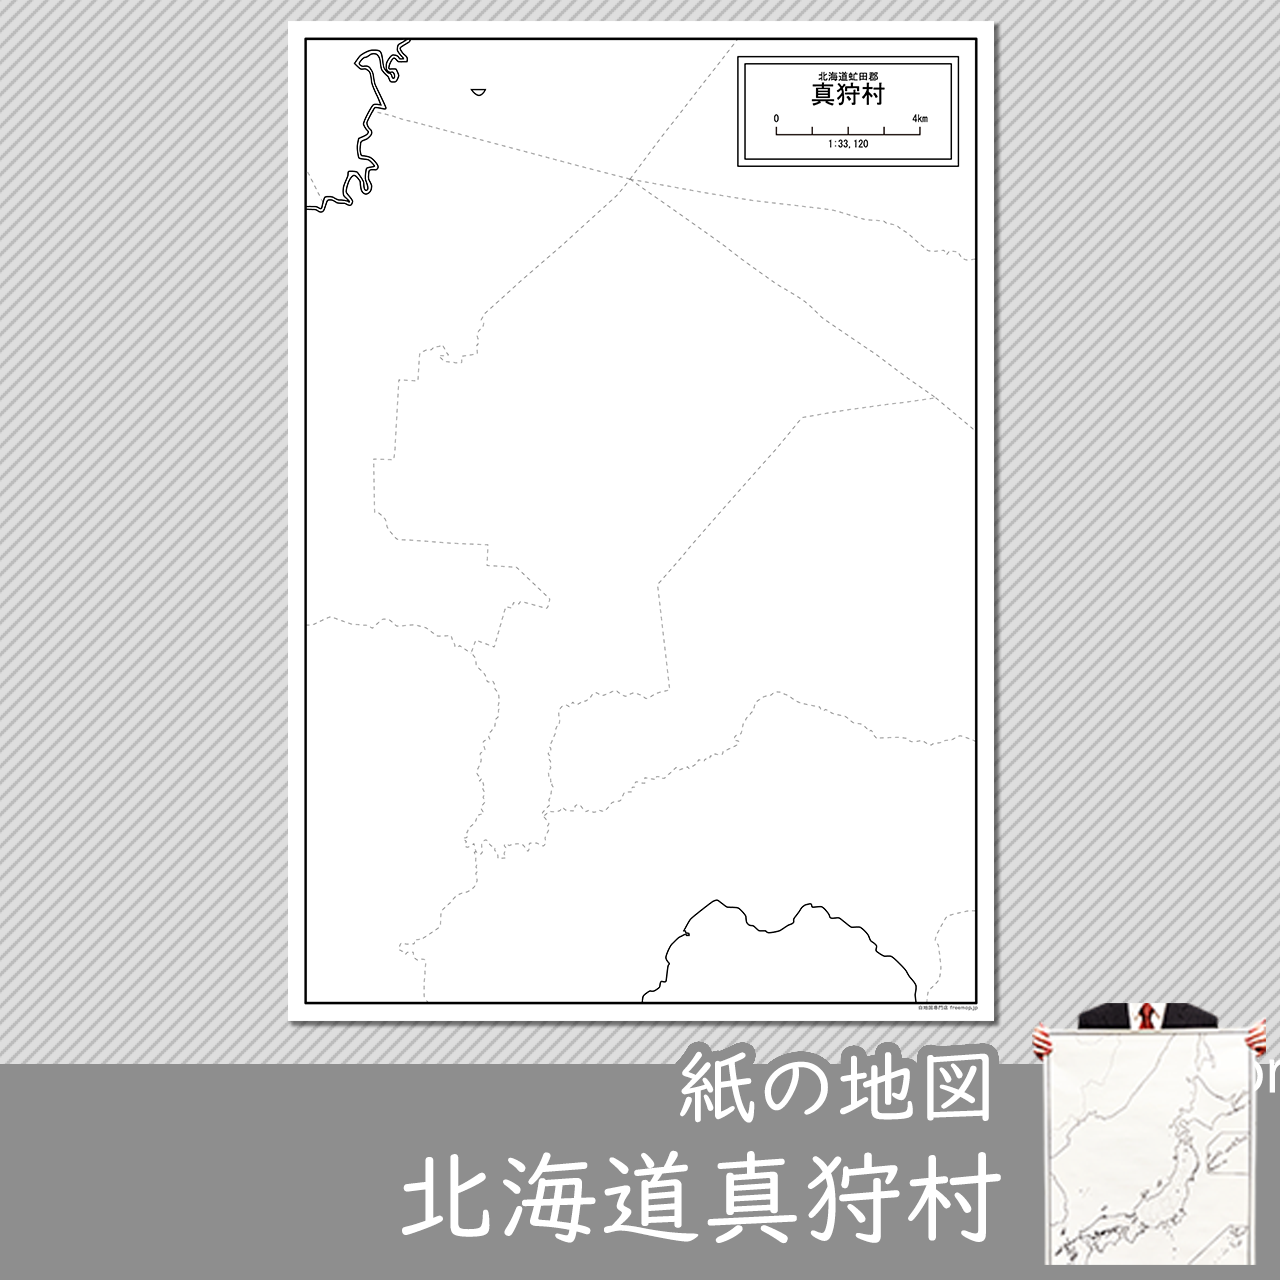 真狩村の紙の白地図のサムネイル